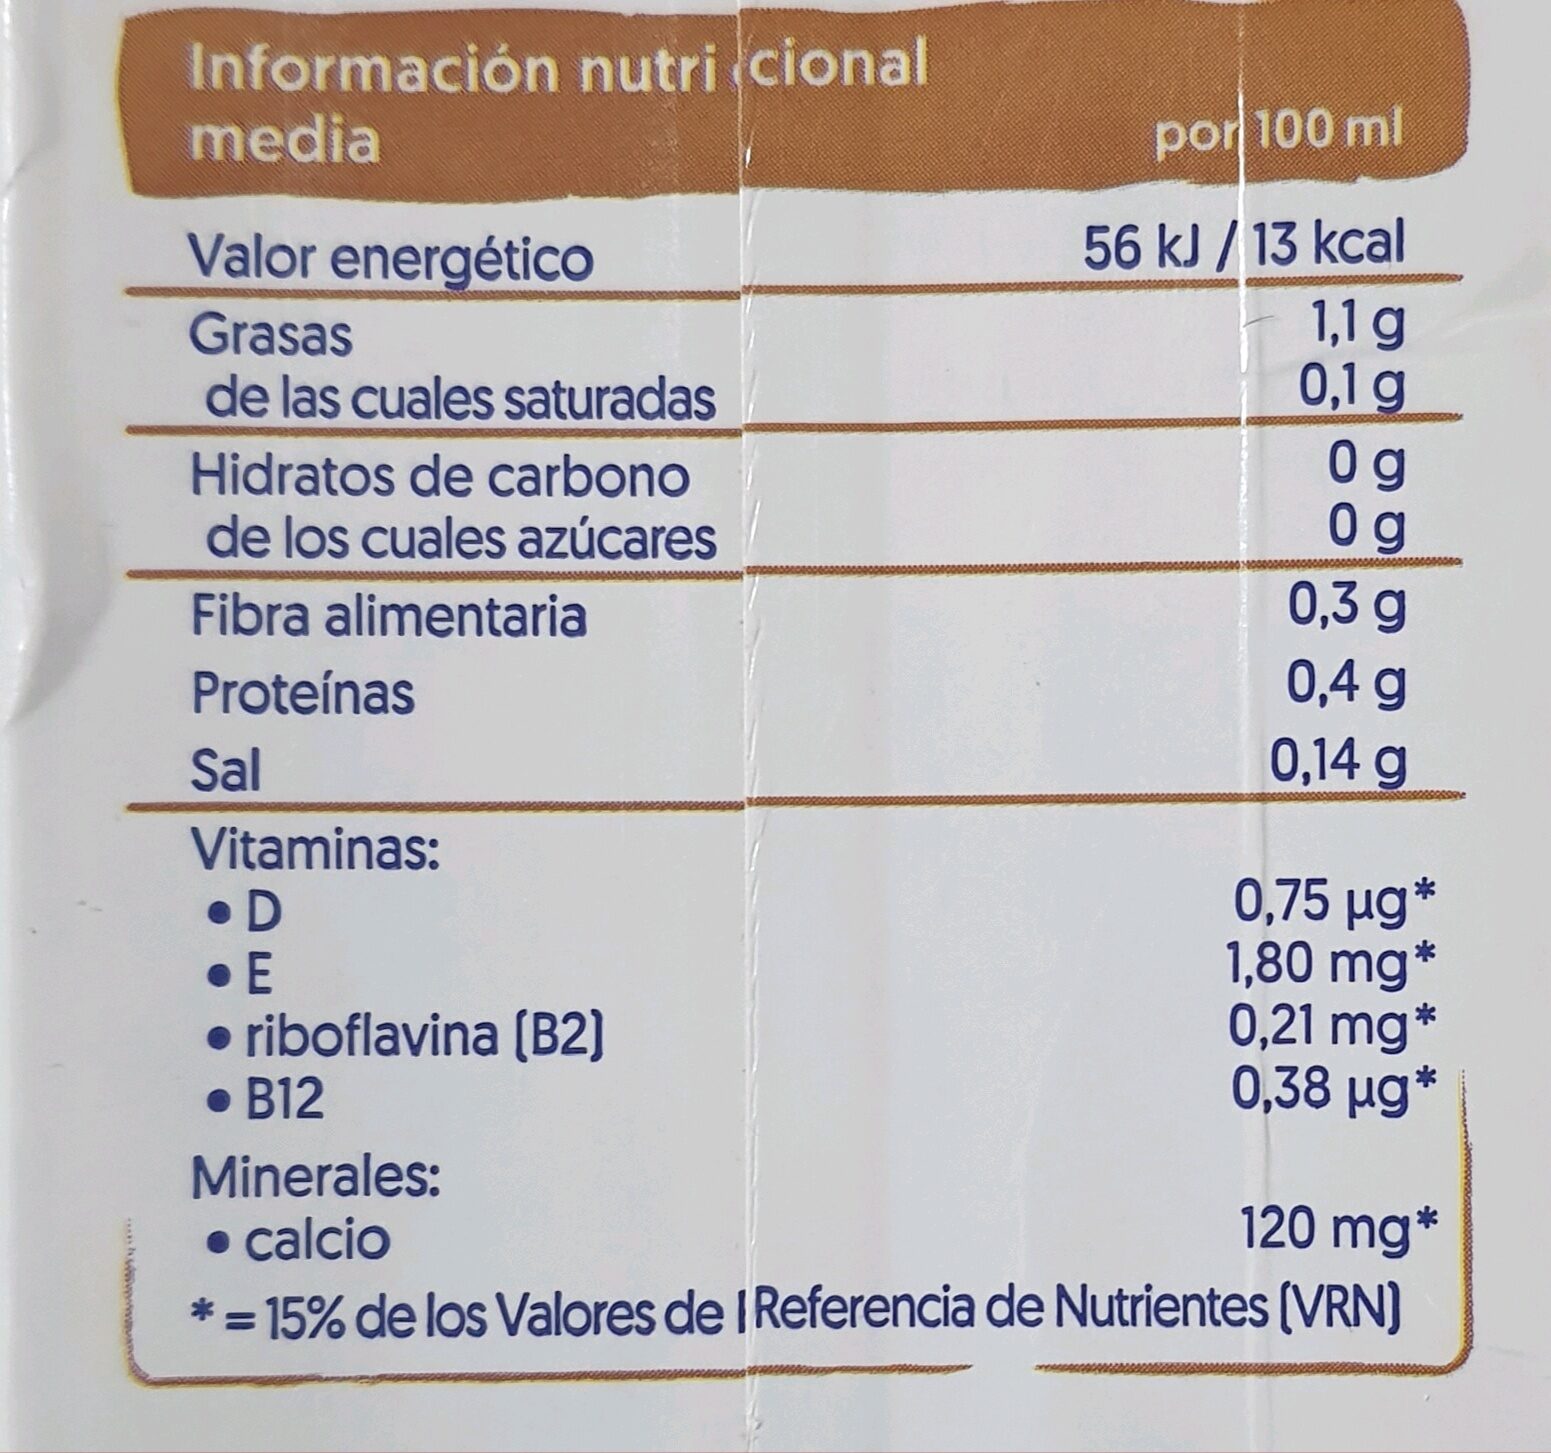 Almonddrink - Información nutricional